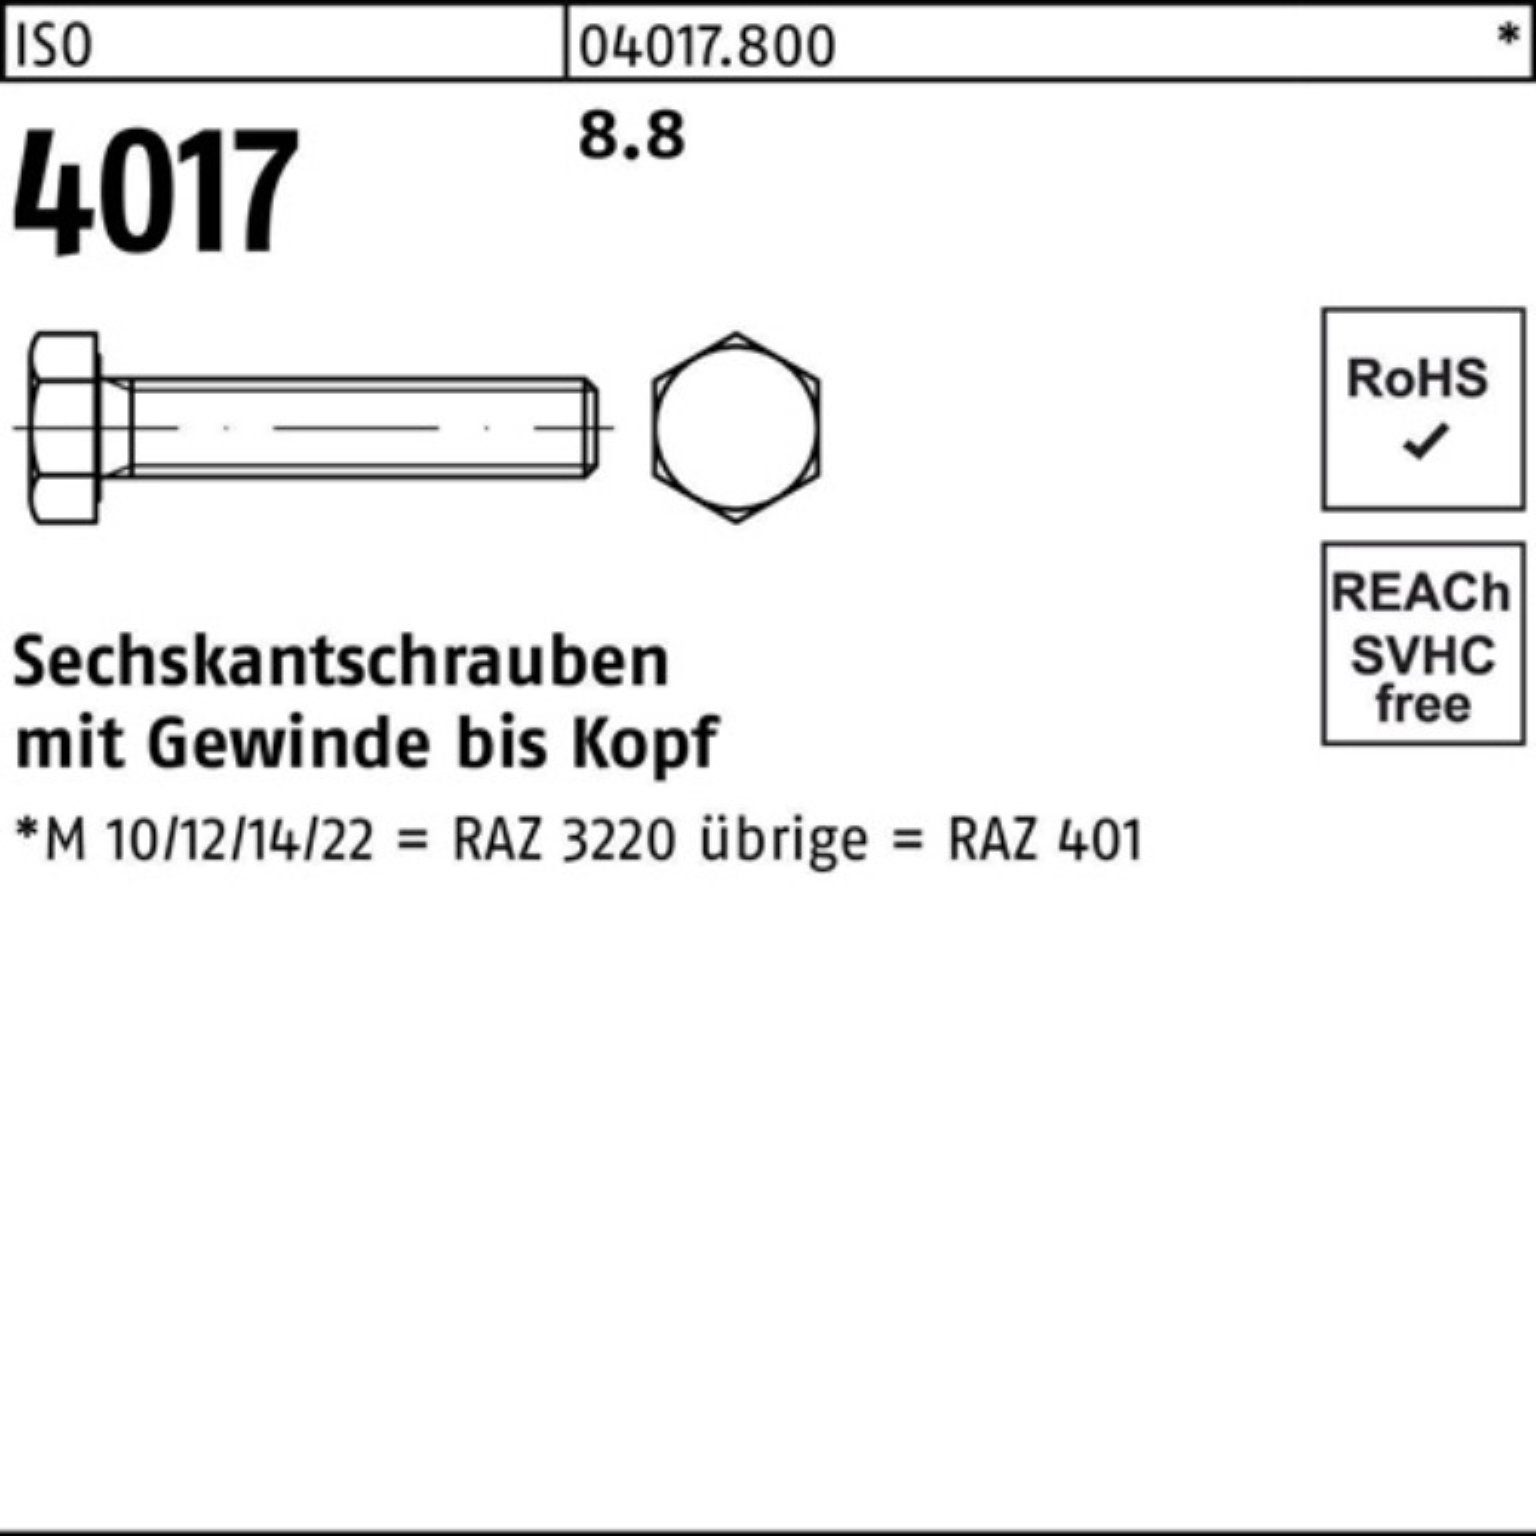 Pack Sechskantschraube 25 Bufab M14x ISO Stück 4017 100er 160 VG 40 Sechskantschraube ISO 8.8